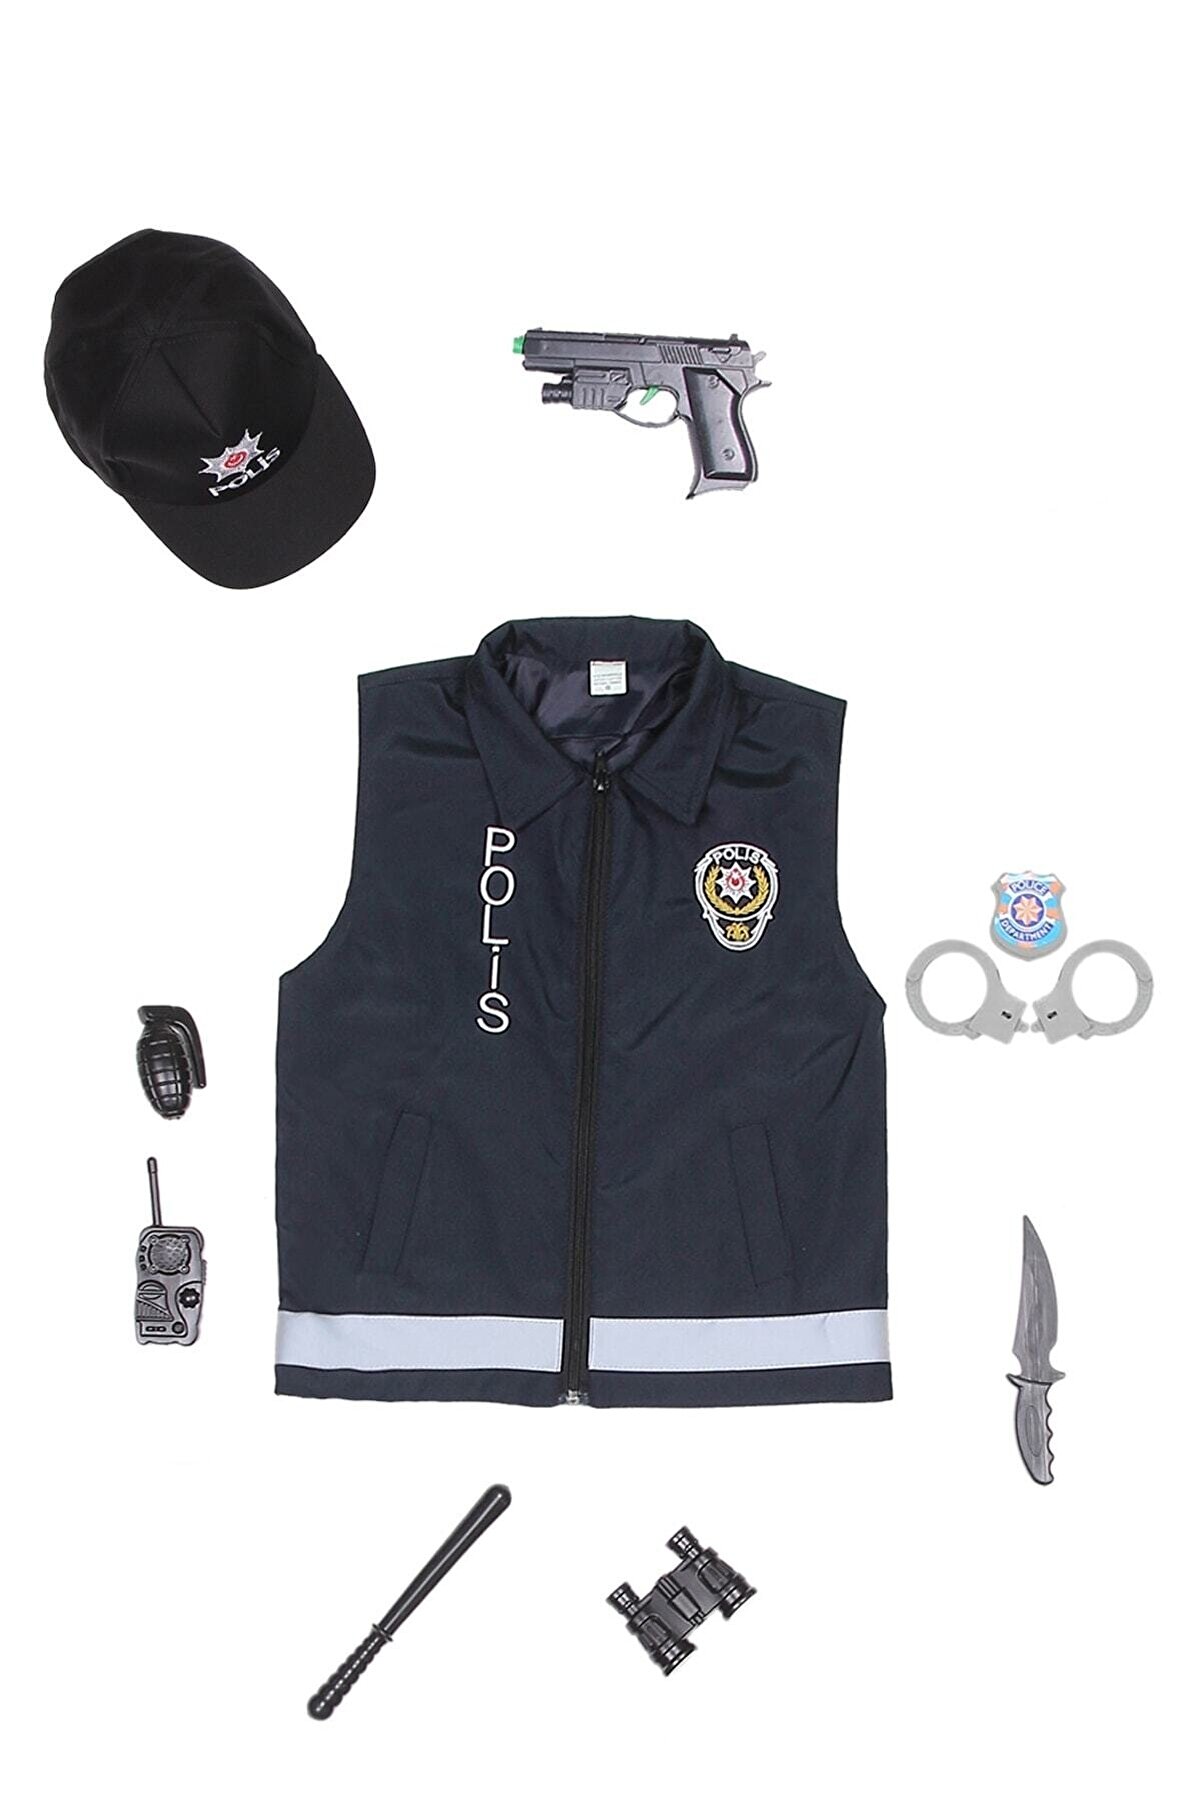 fabrikoloji Unisex Lacivert Polis Yeleği Kostümü Çocuk Kıyafeti Şapka Oyuncak A1 Fbrklj938